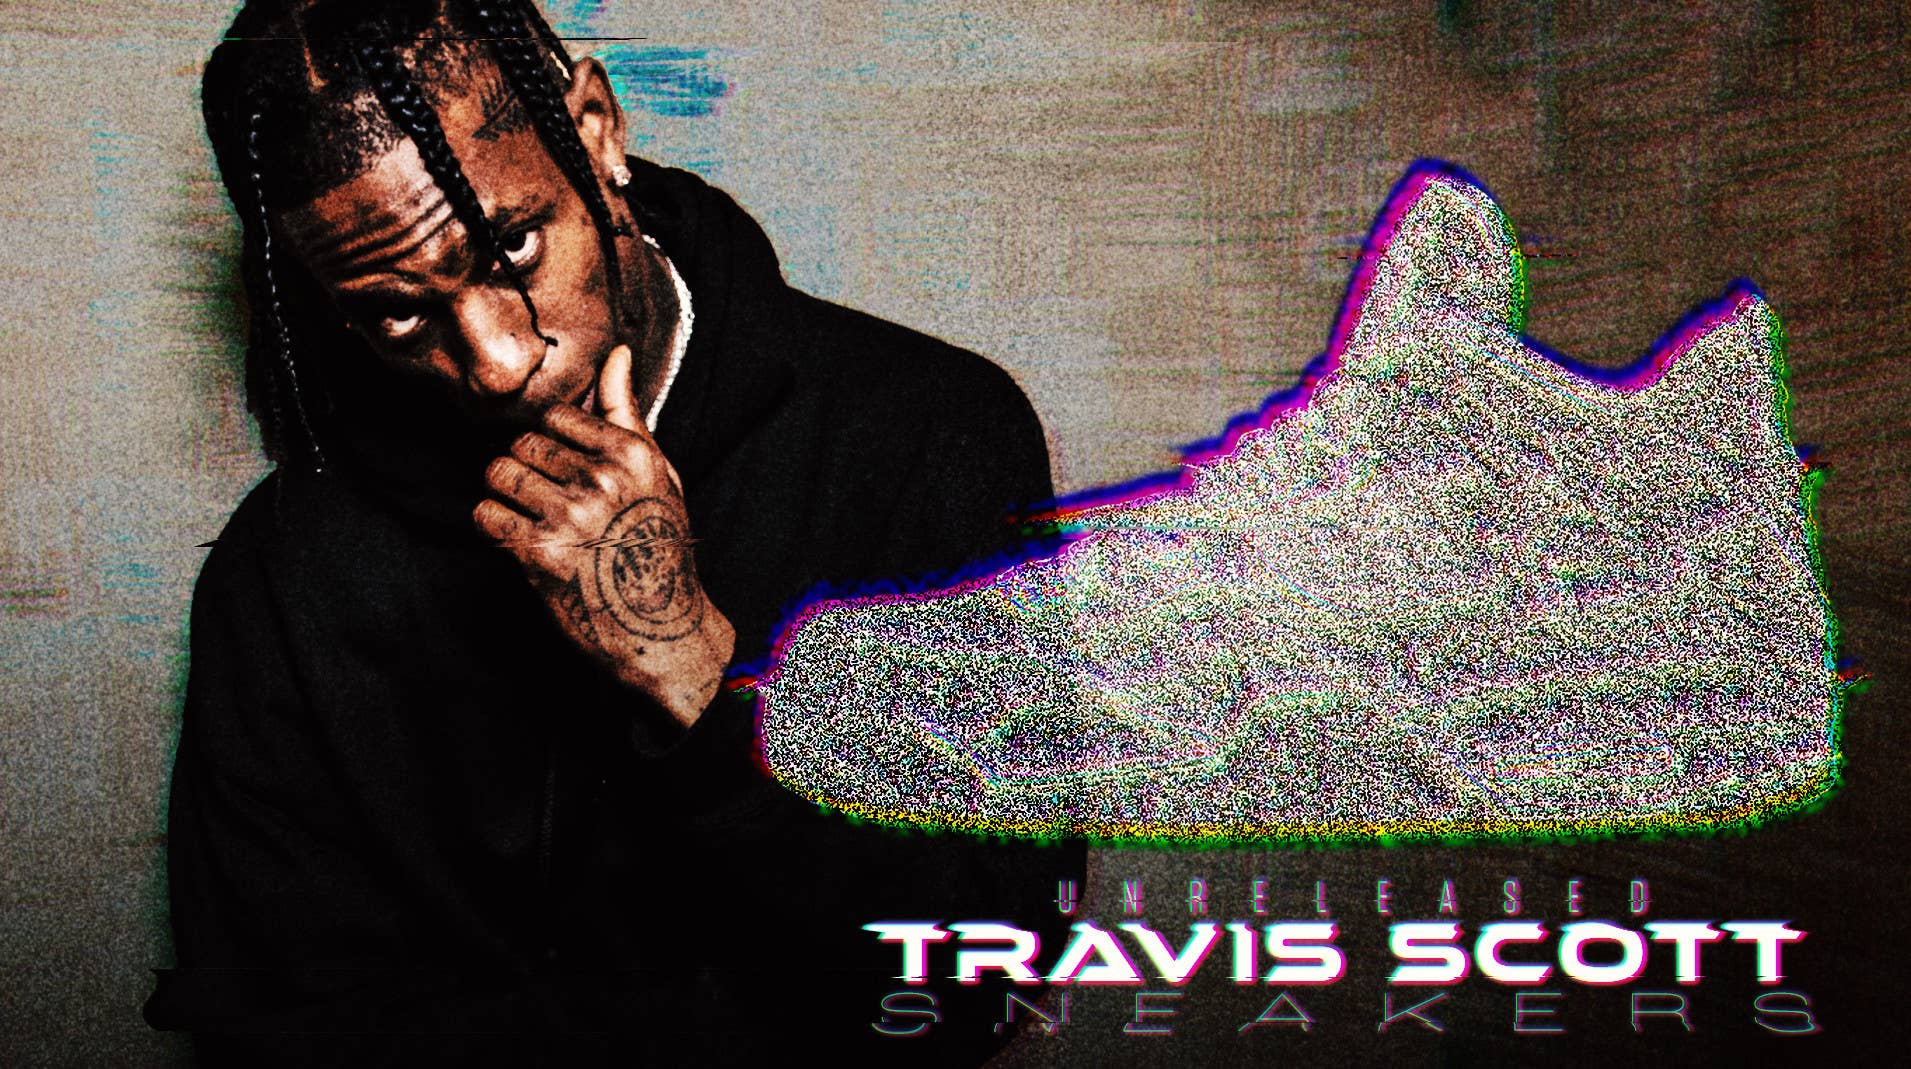 Every Unreleased Travis Scott Sneaker